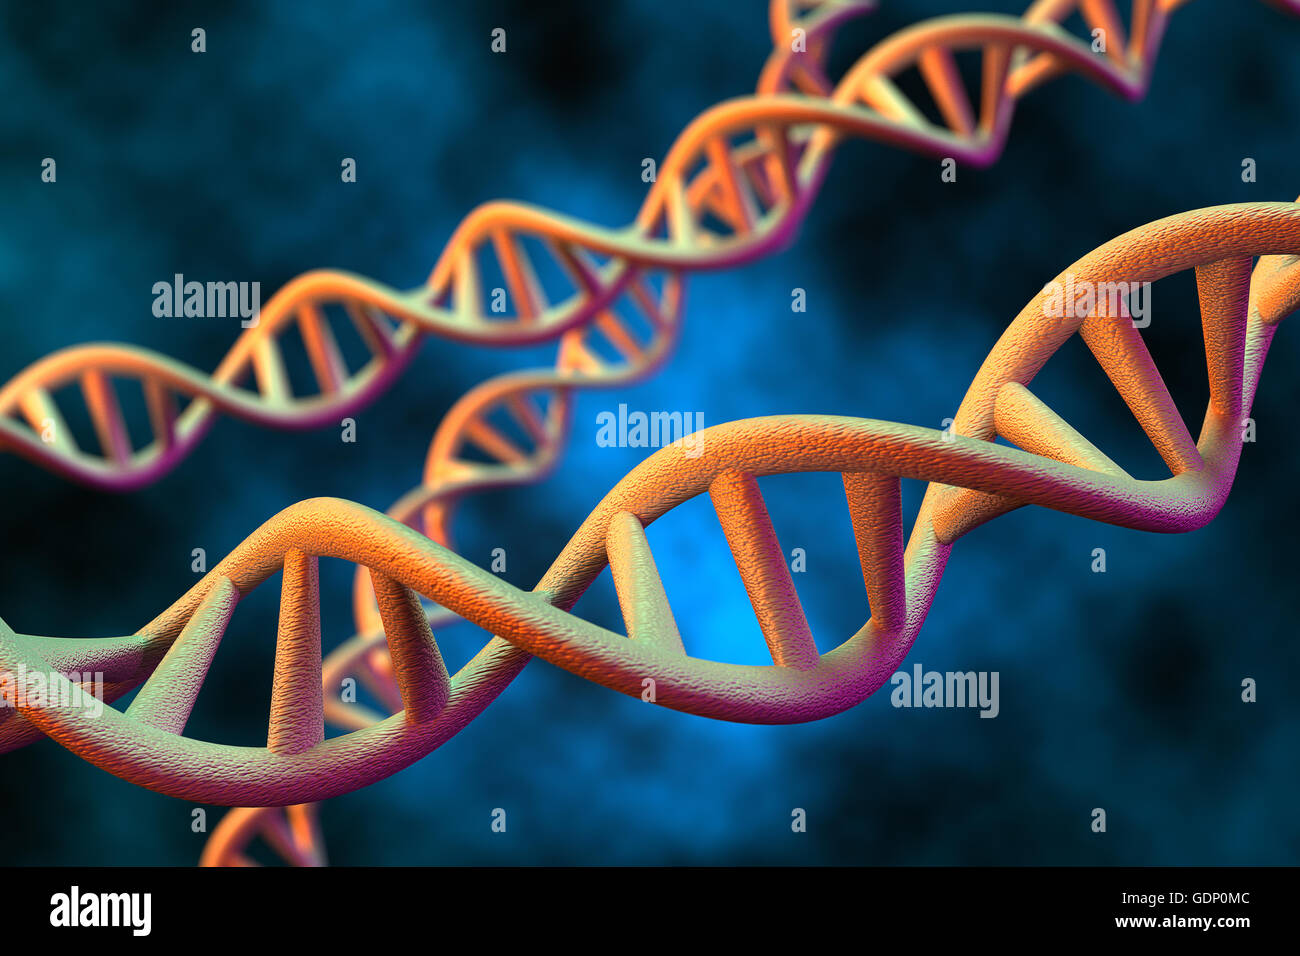 3D-Rendering des DNA-Moleküls des Menschen. Stockfoto